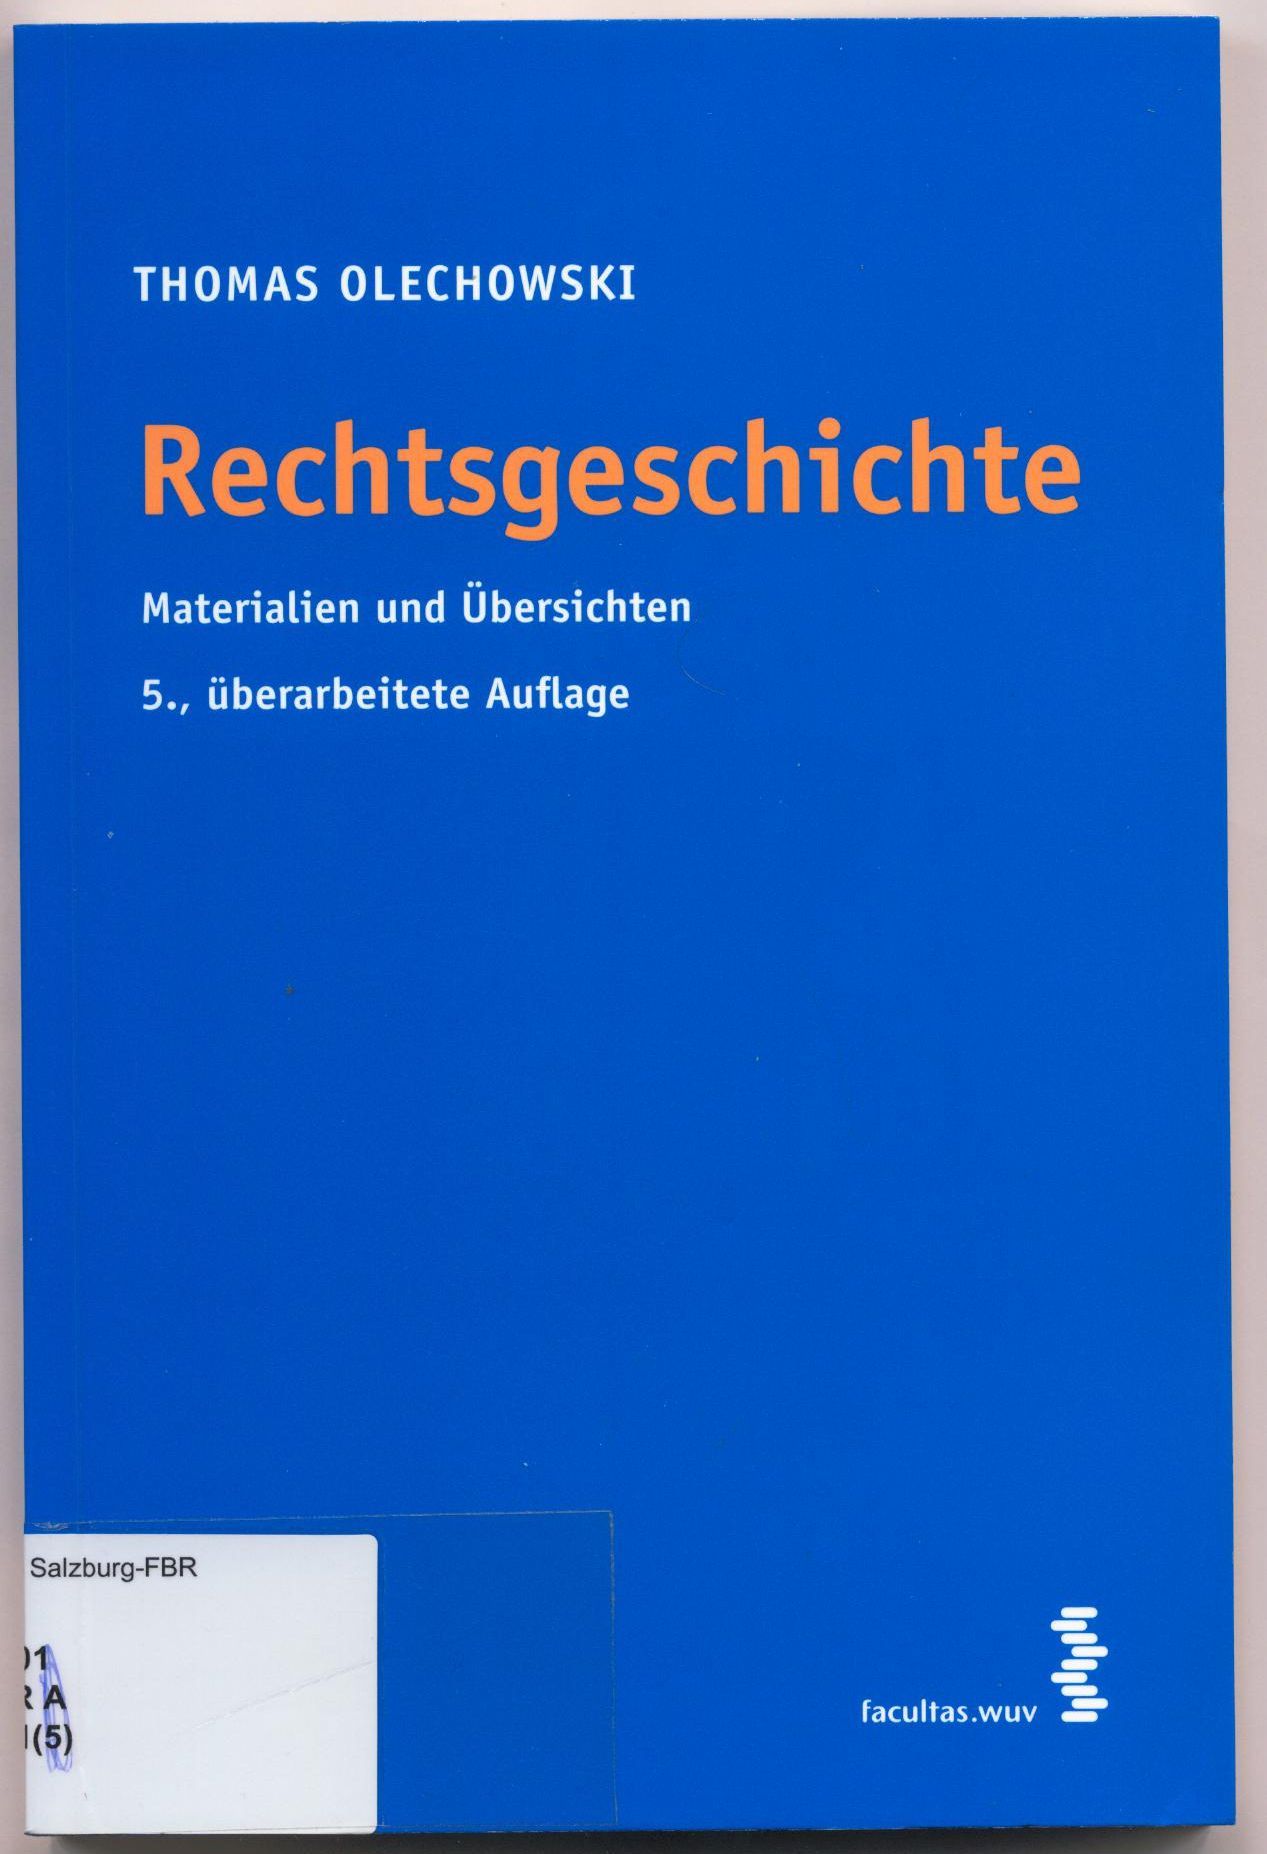 Rechtsgeschichte Materialien und Übersichten - Olechowski, Thomas